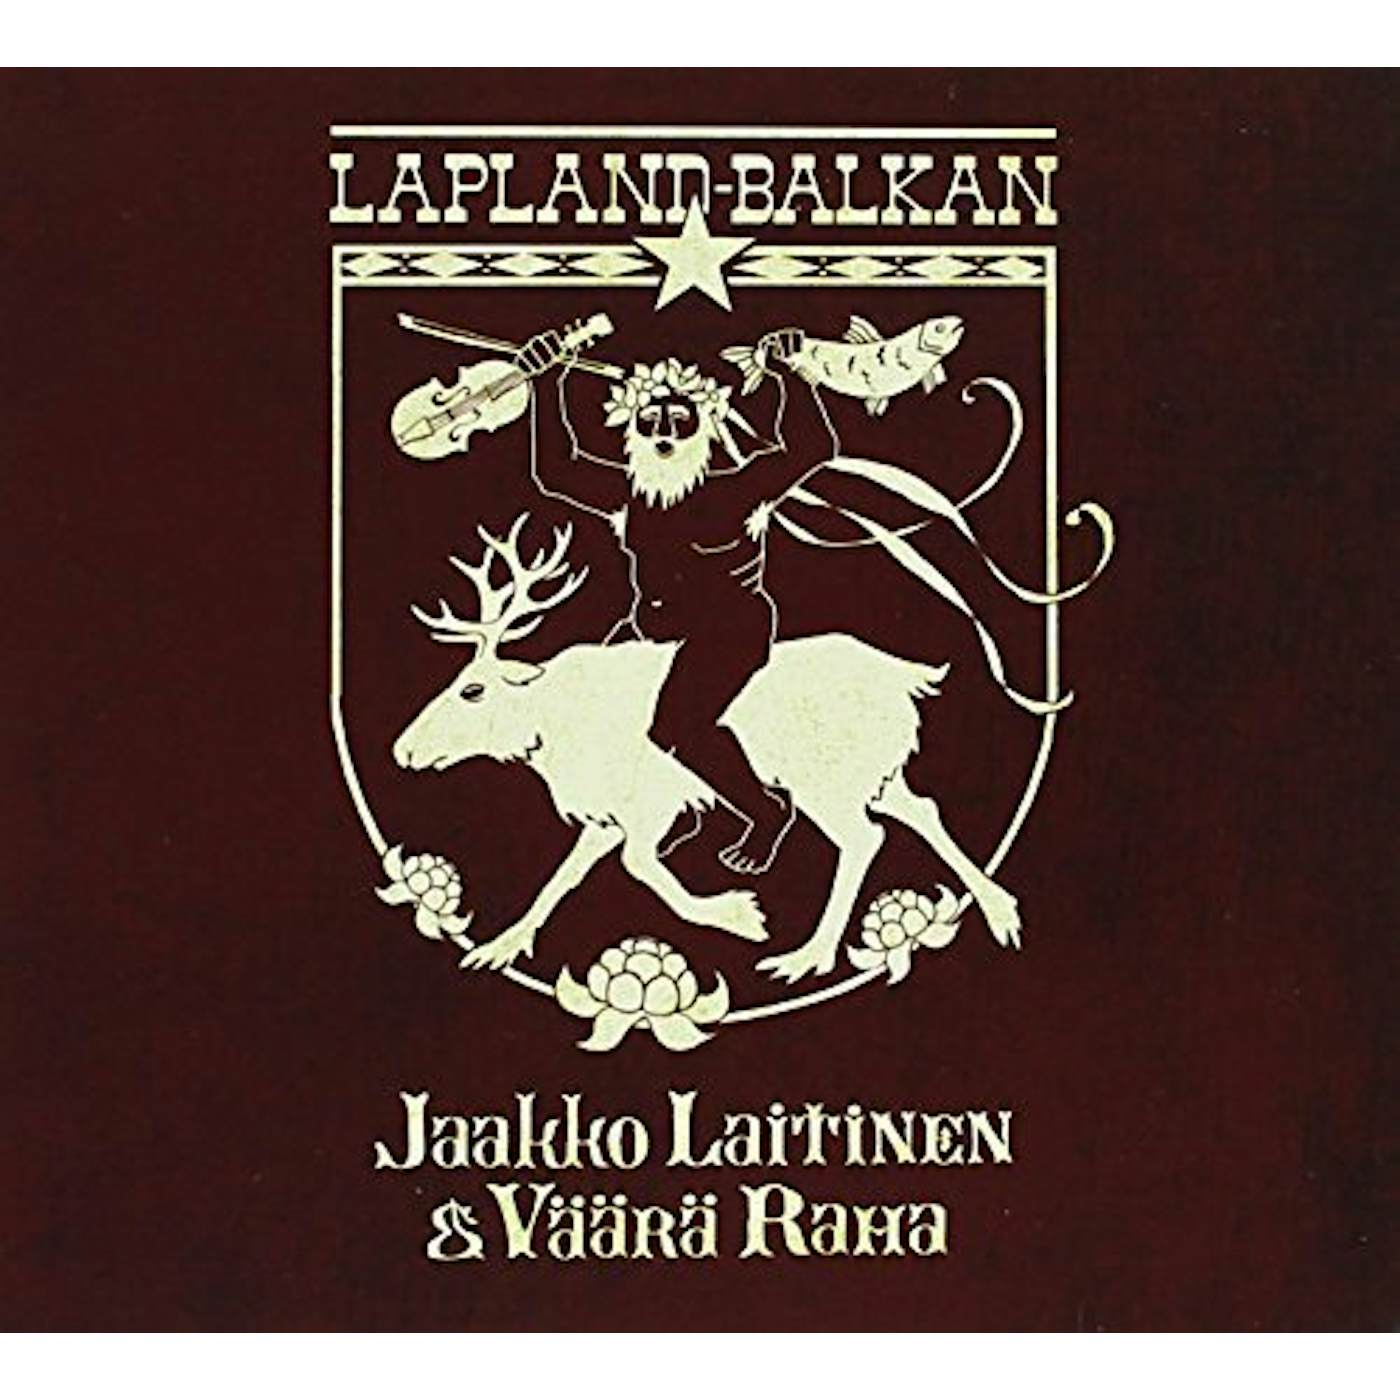 Jaakko Laitinen & Väärä Raha LAPLAND-BALKAN CD